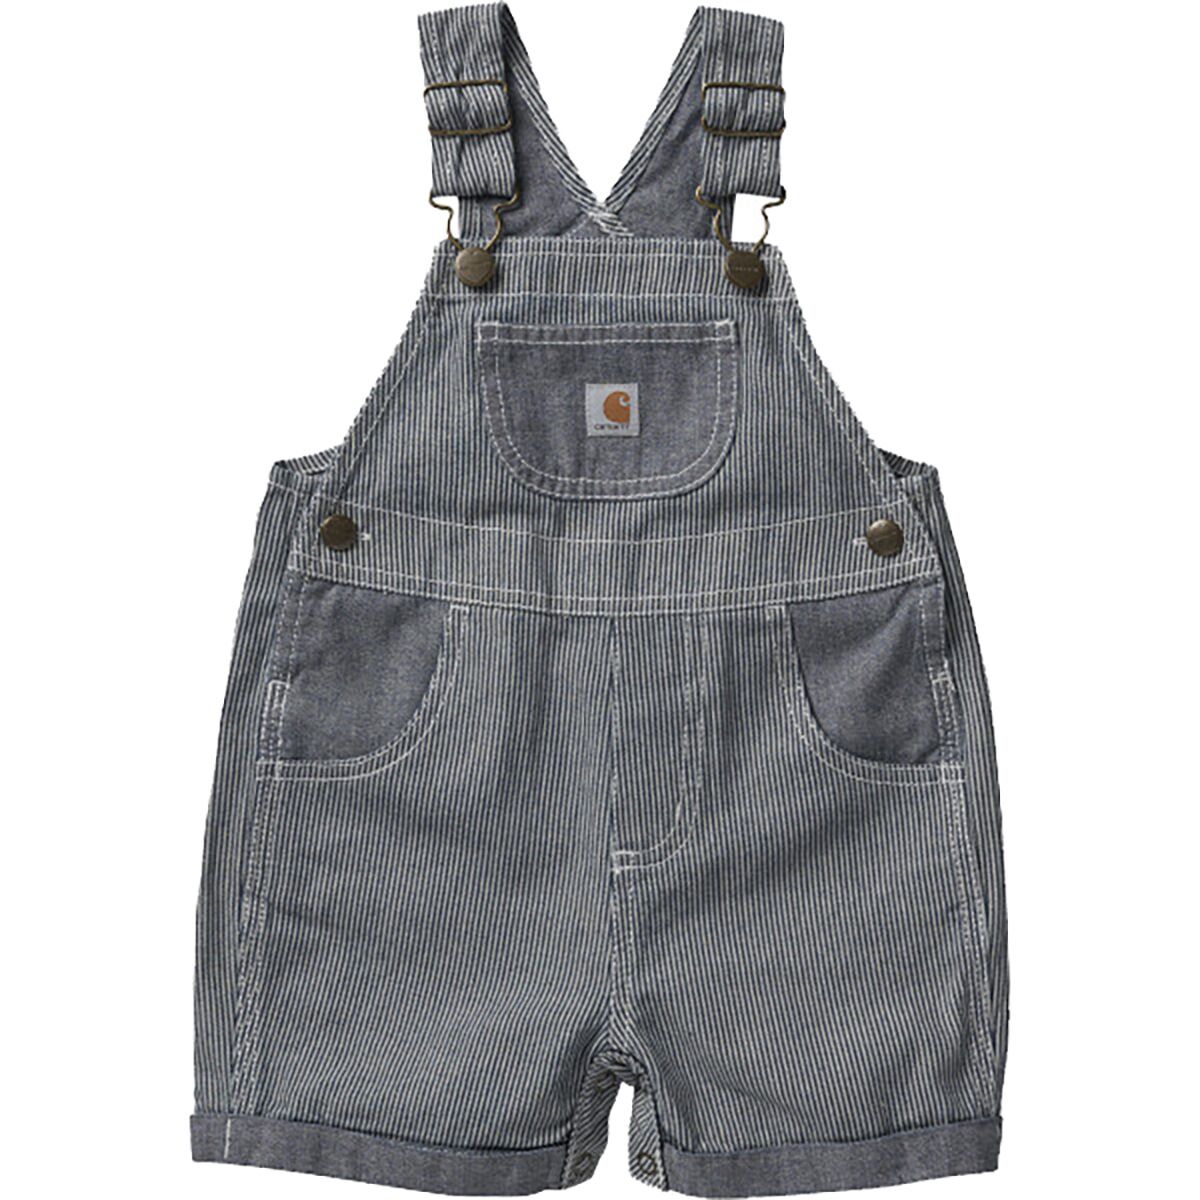 Carhartt Infant Girl's Short-Sleeve Bodysuit and Chambray Shortall